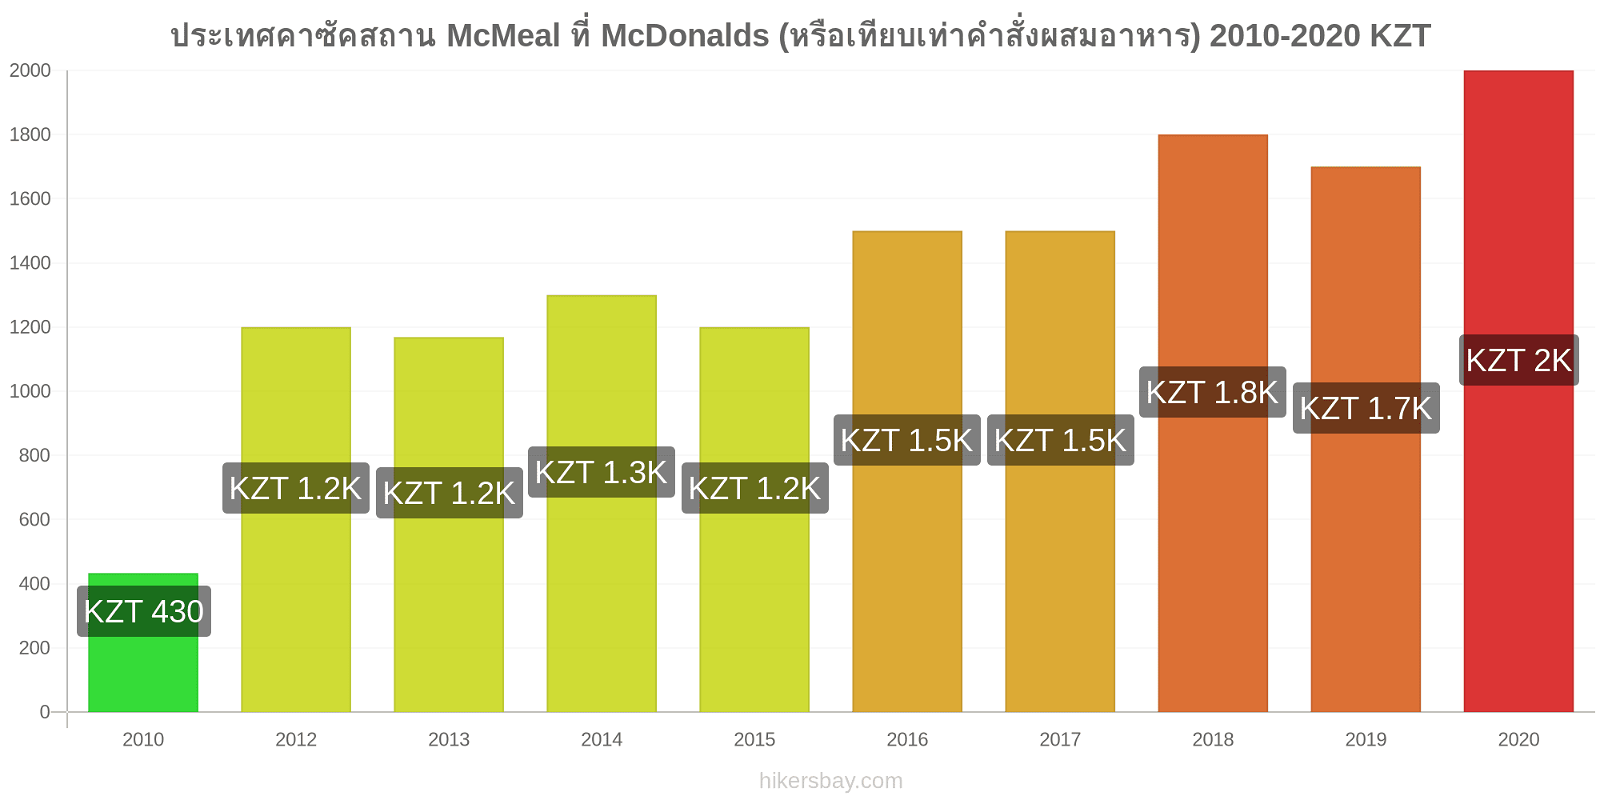 ประเทศคาซัคสถาน การเปลี่ยนแปลงราคา McMeal ที่ McDonalds (หรือเทียบเท่าคำสั่งผสมอาหาร) hikersbay.com